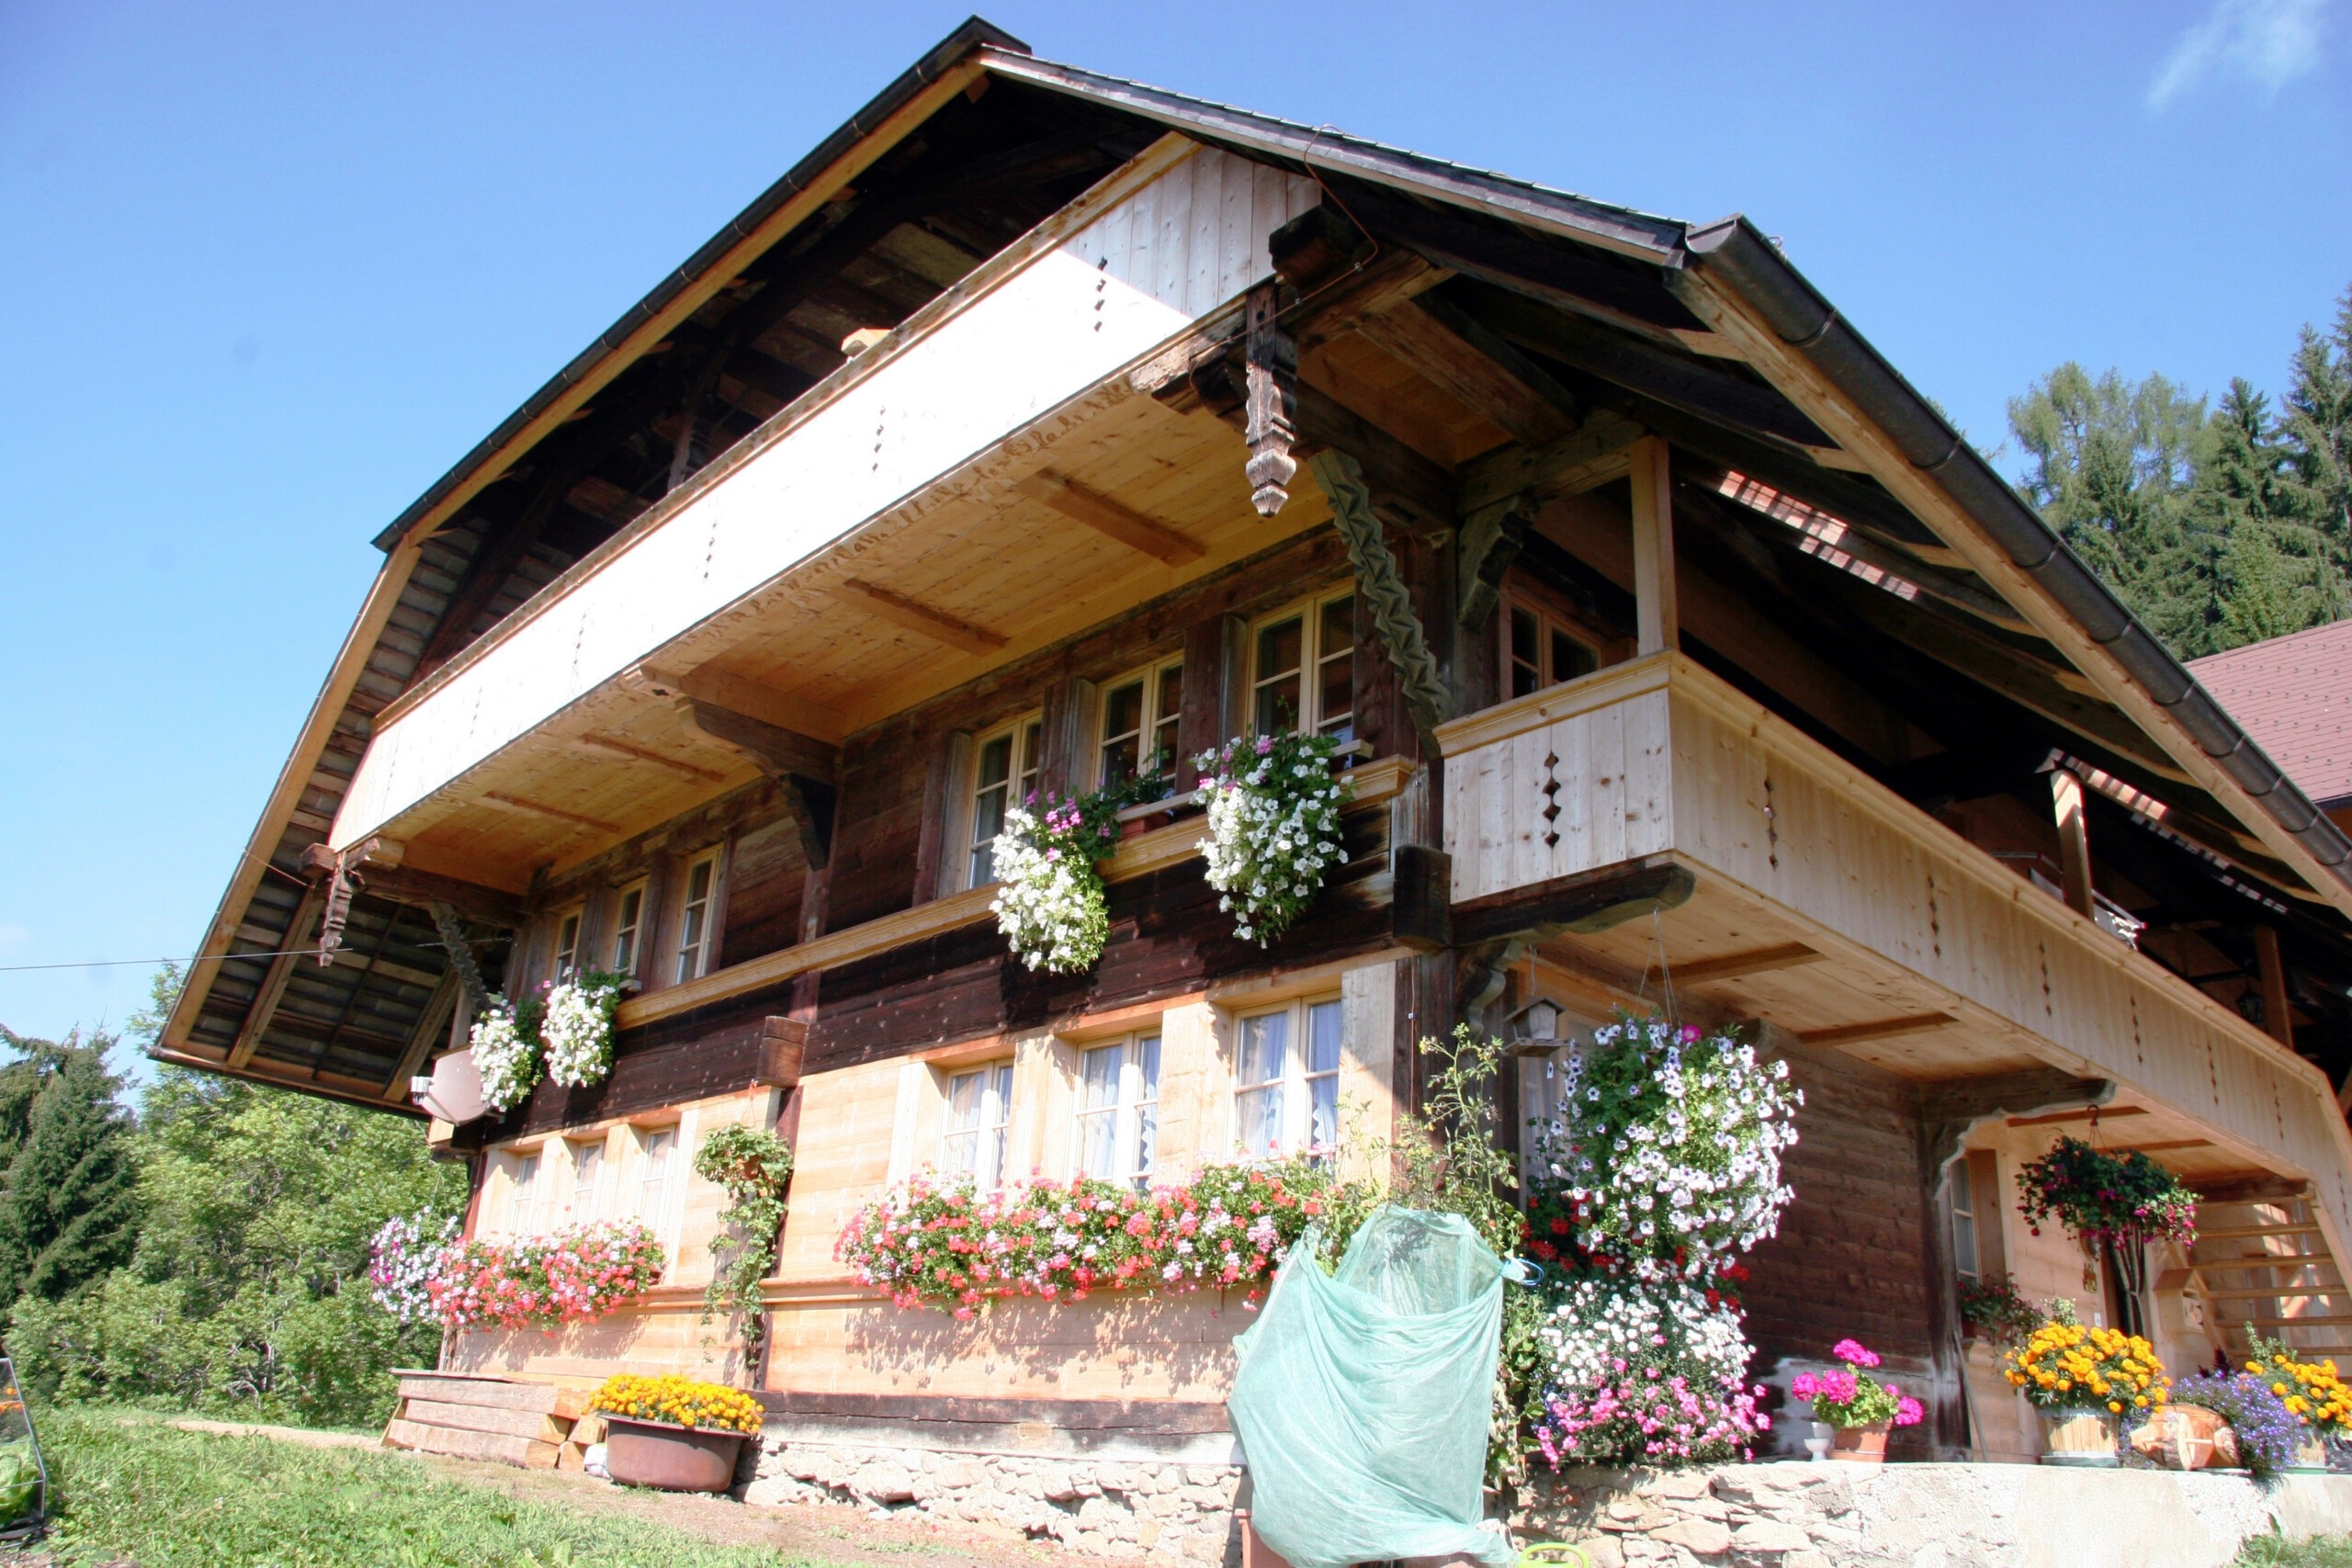 Bauernhaus mit Blumen